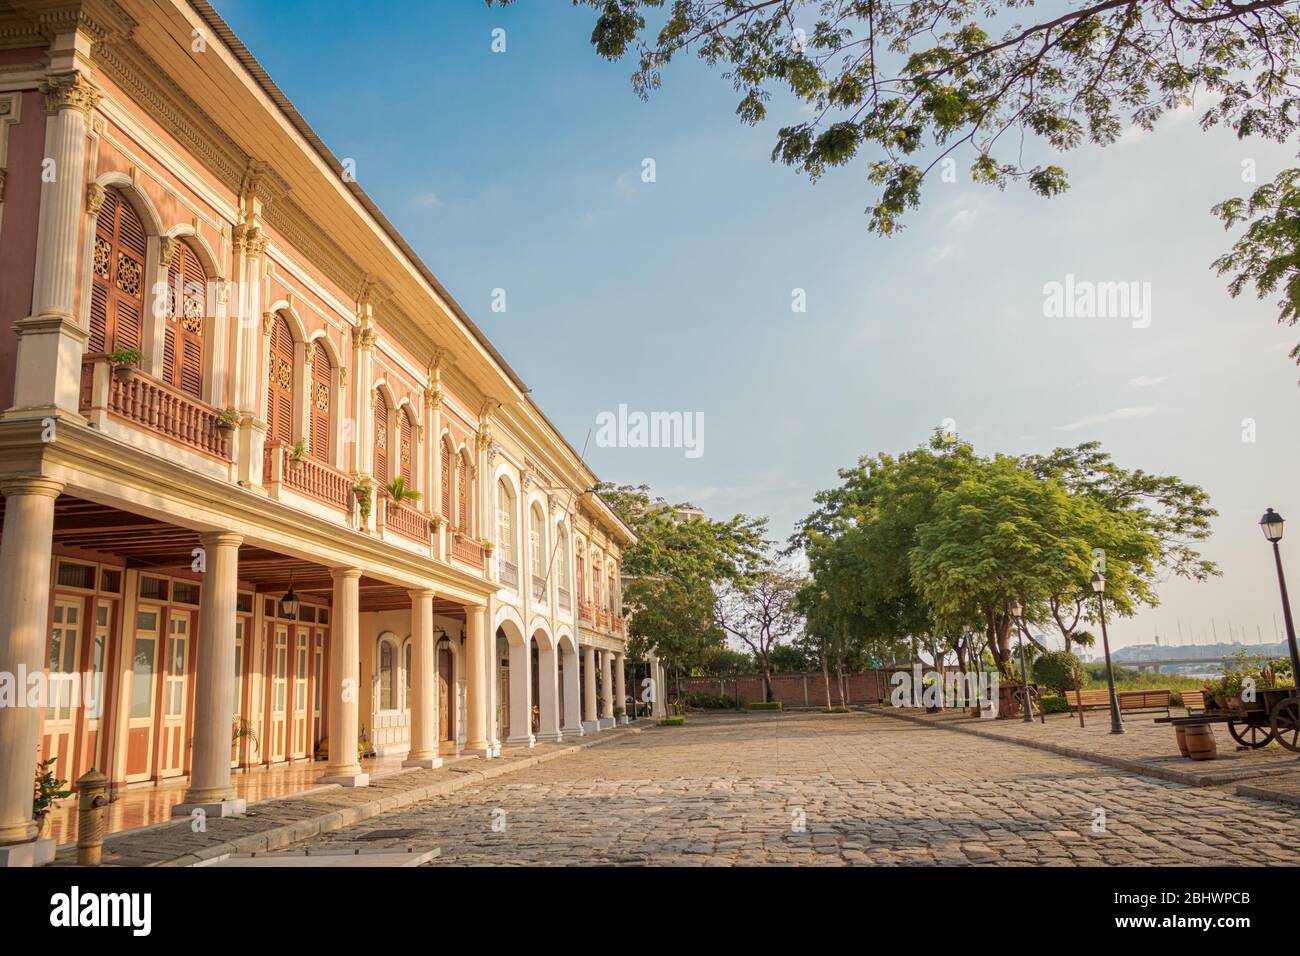 Parque historico de Guayaquil Stock Photo